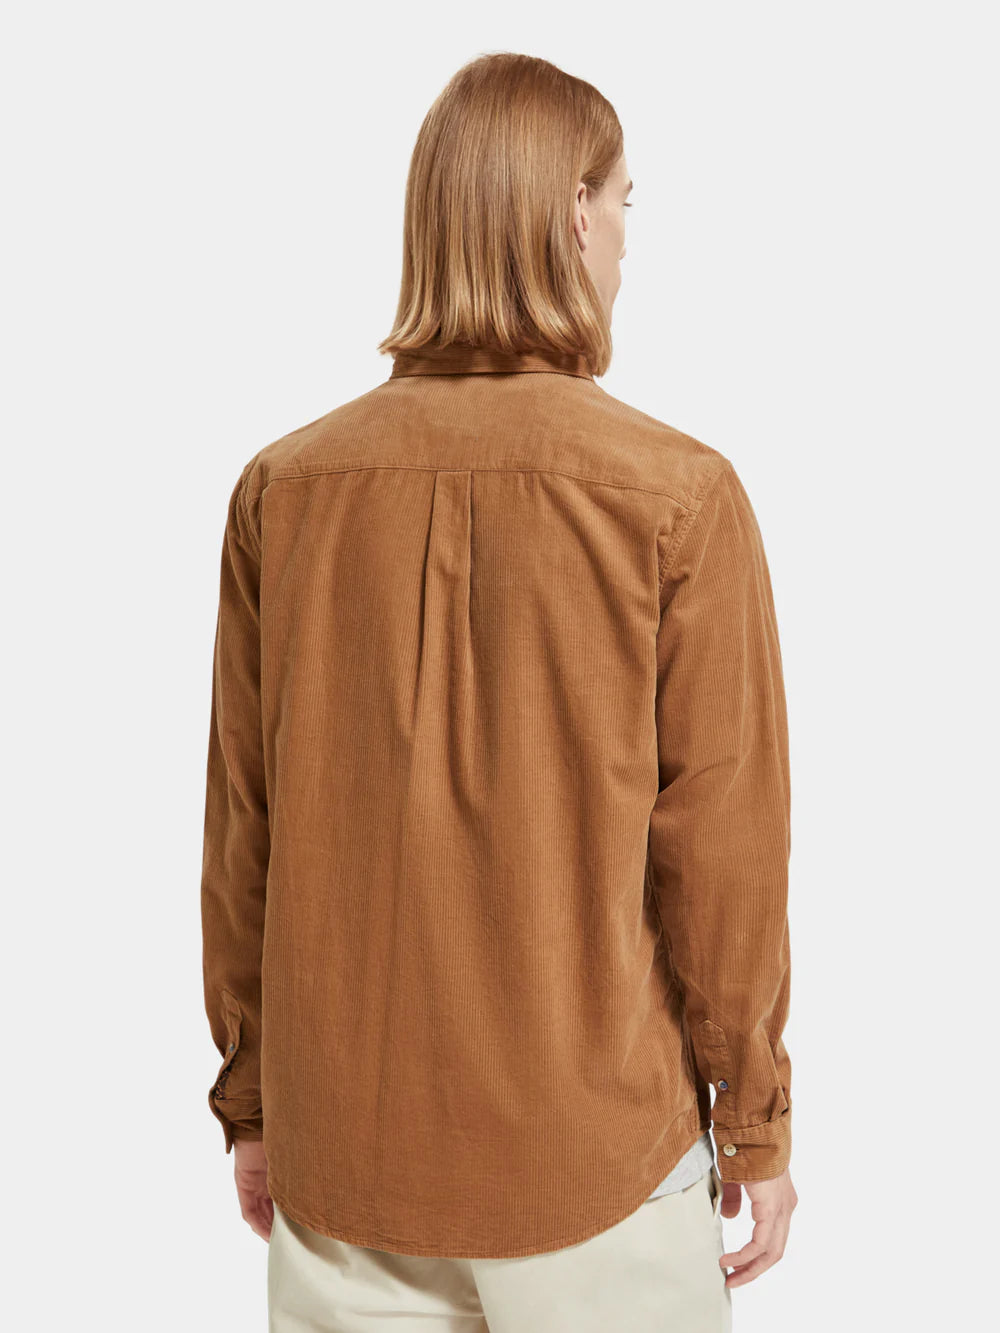 Essential Corduroy Shirt - Camel 174525